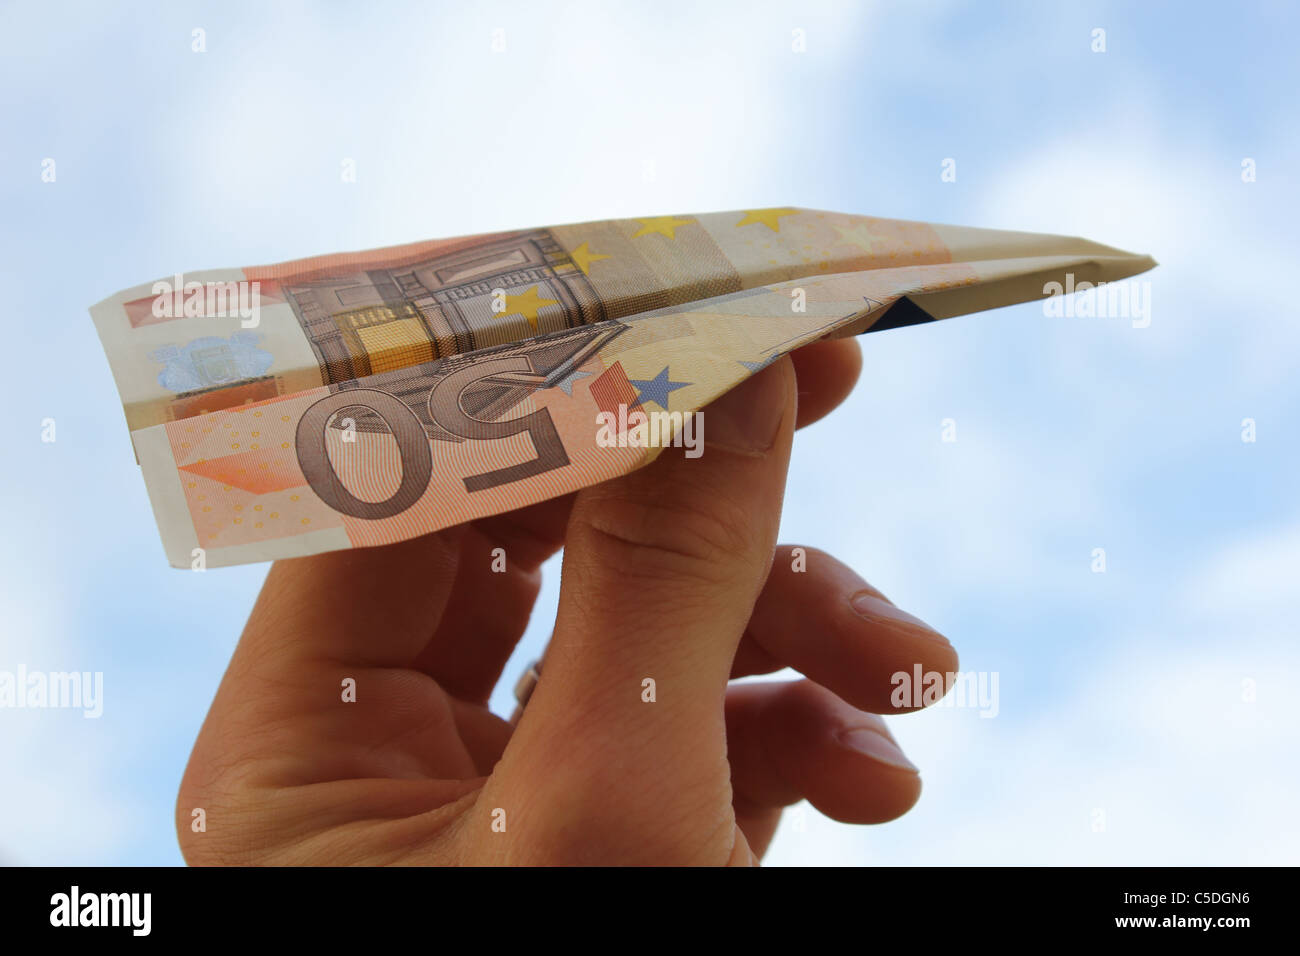 Papierflieger aus einem 50 Euro-Schein gemacht Stockfoto